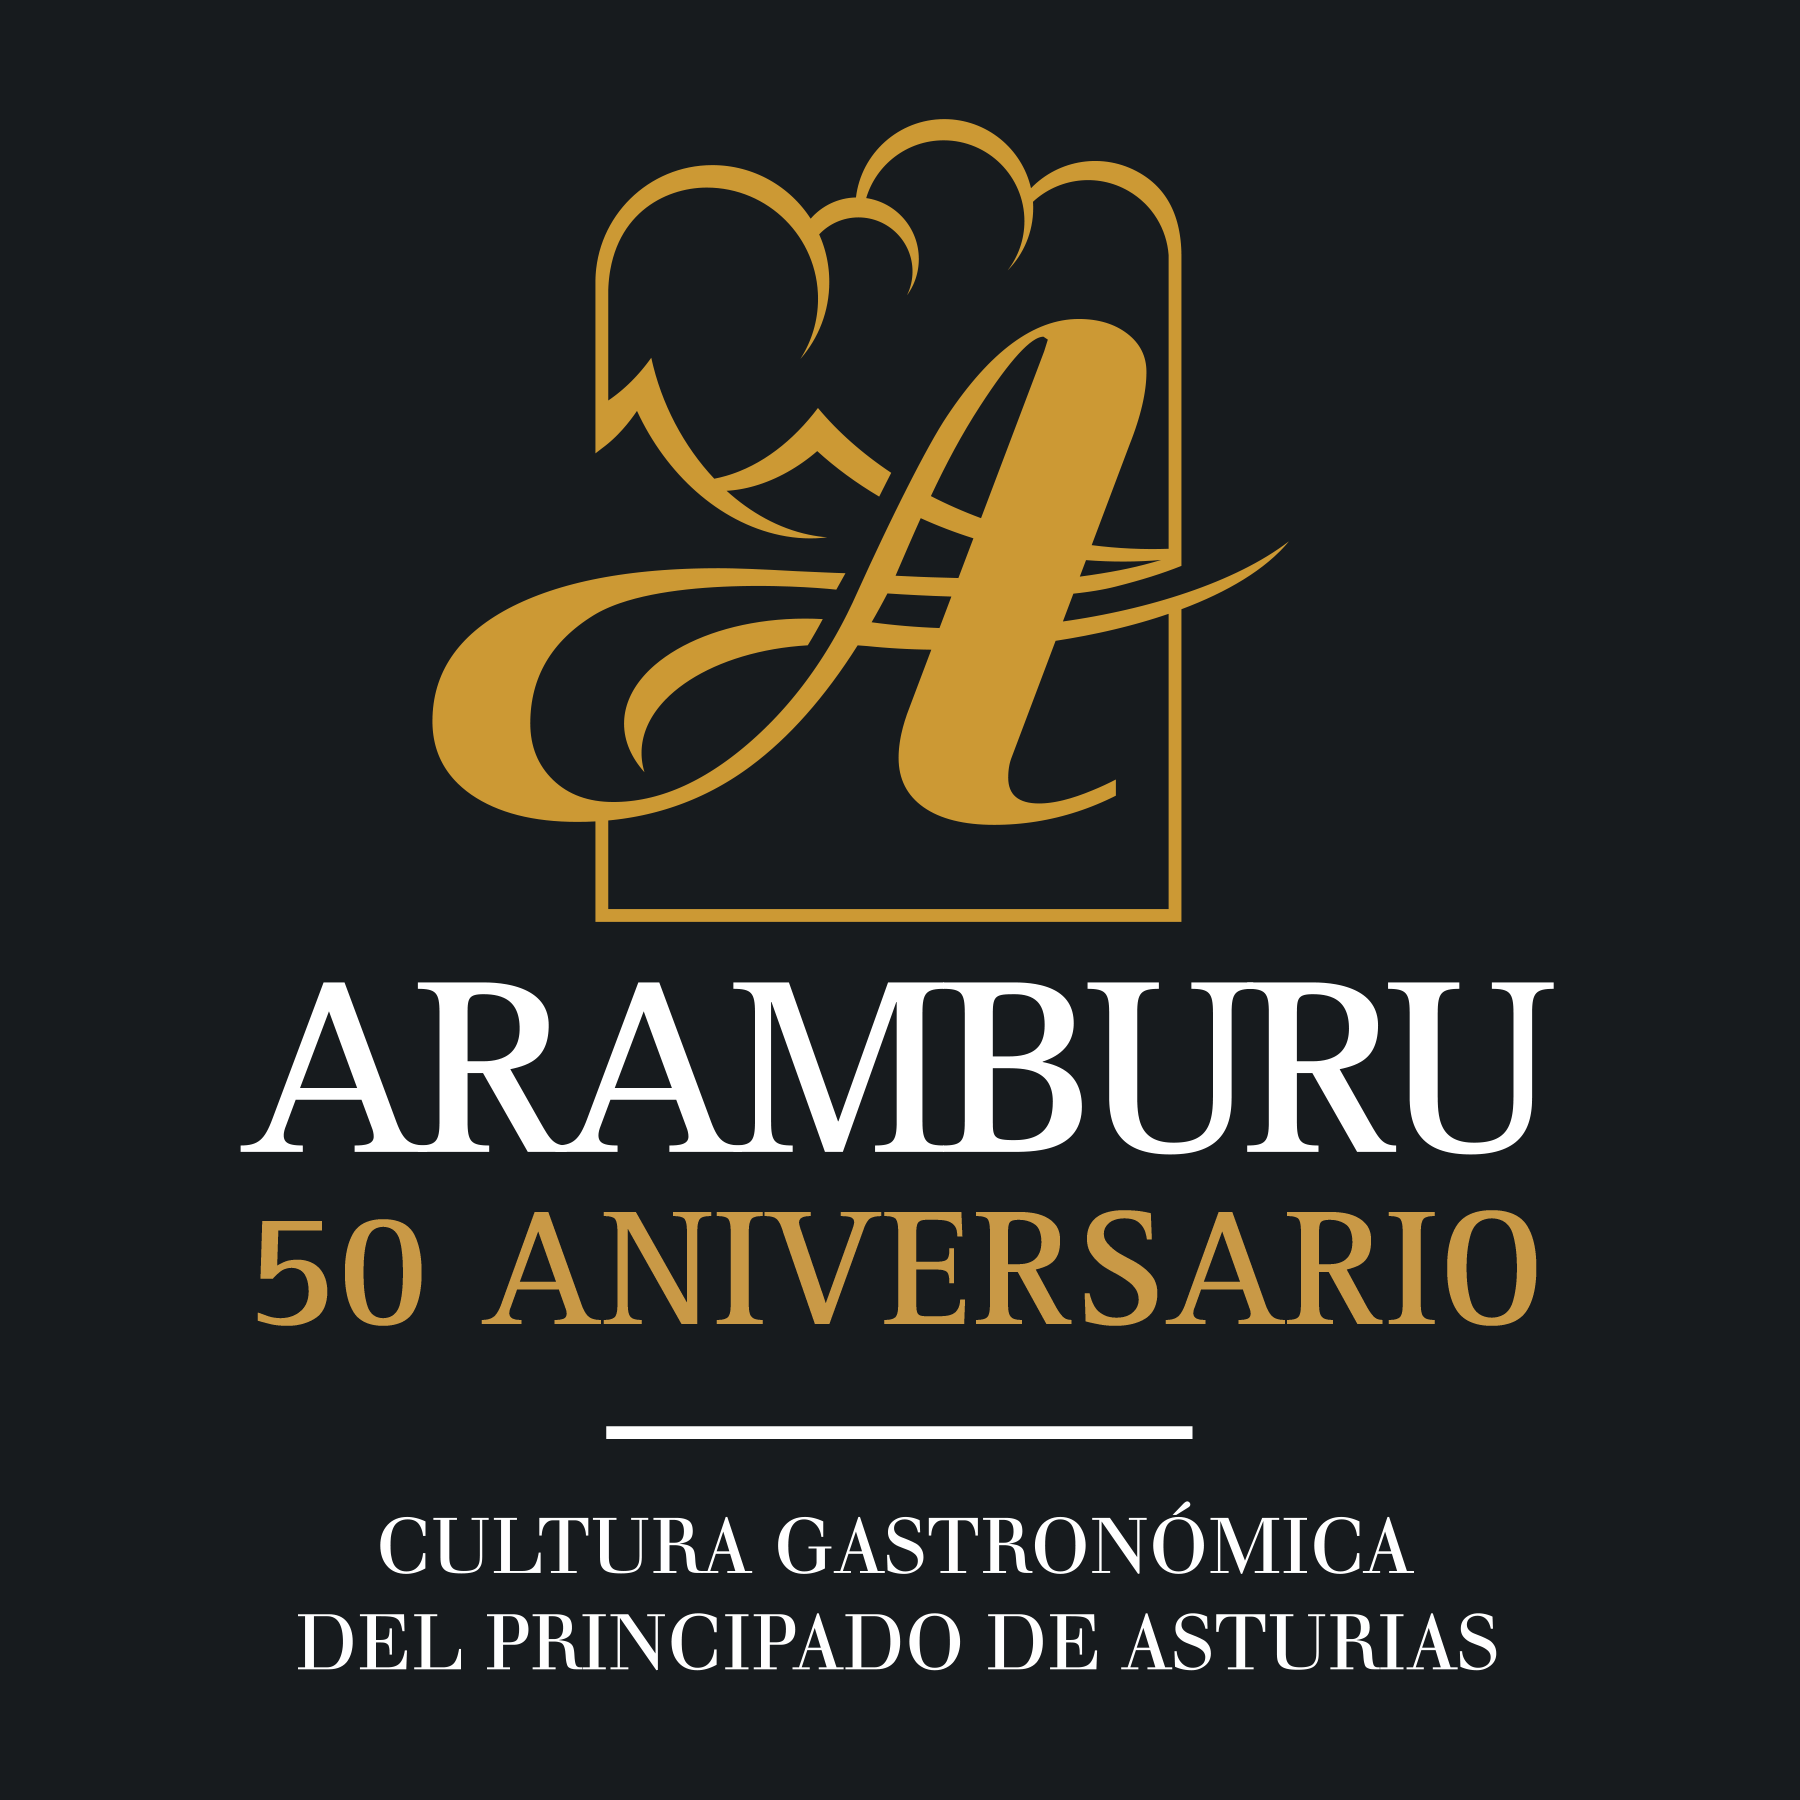 ARAMBURU Coupons & Promo Codes